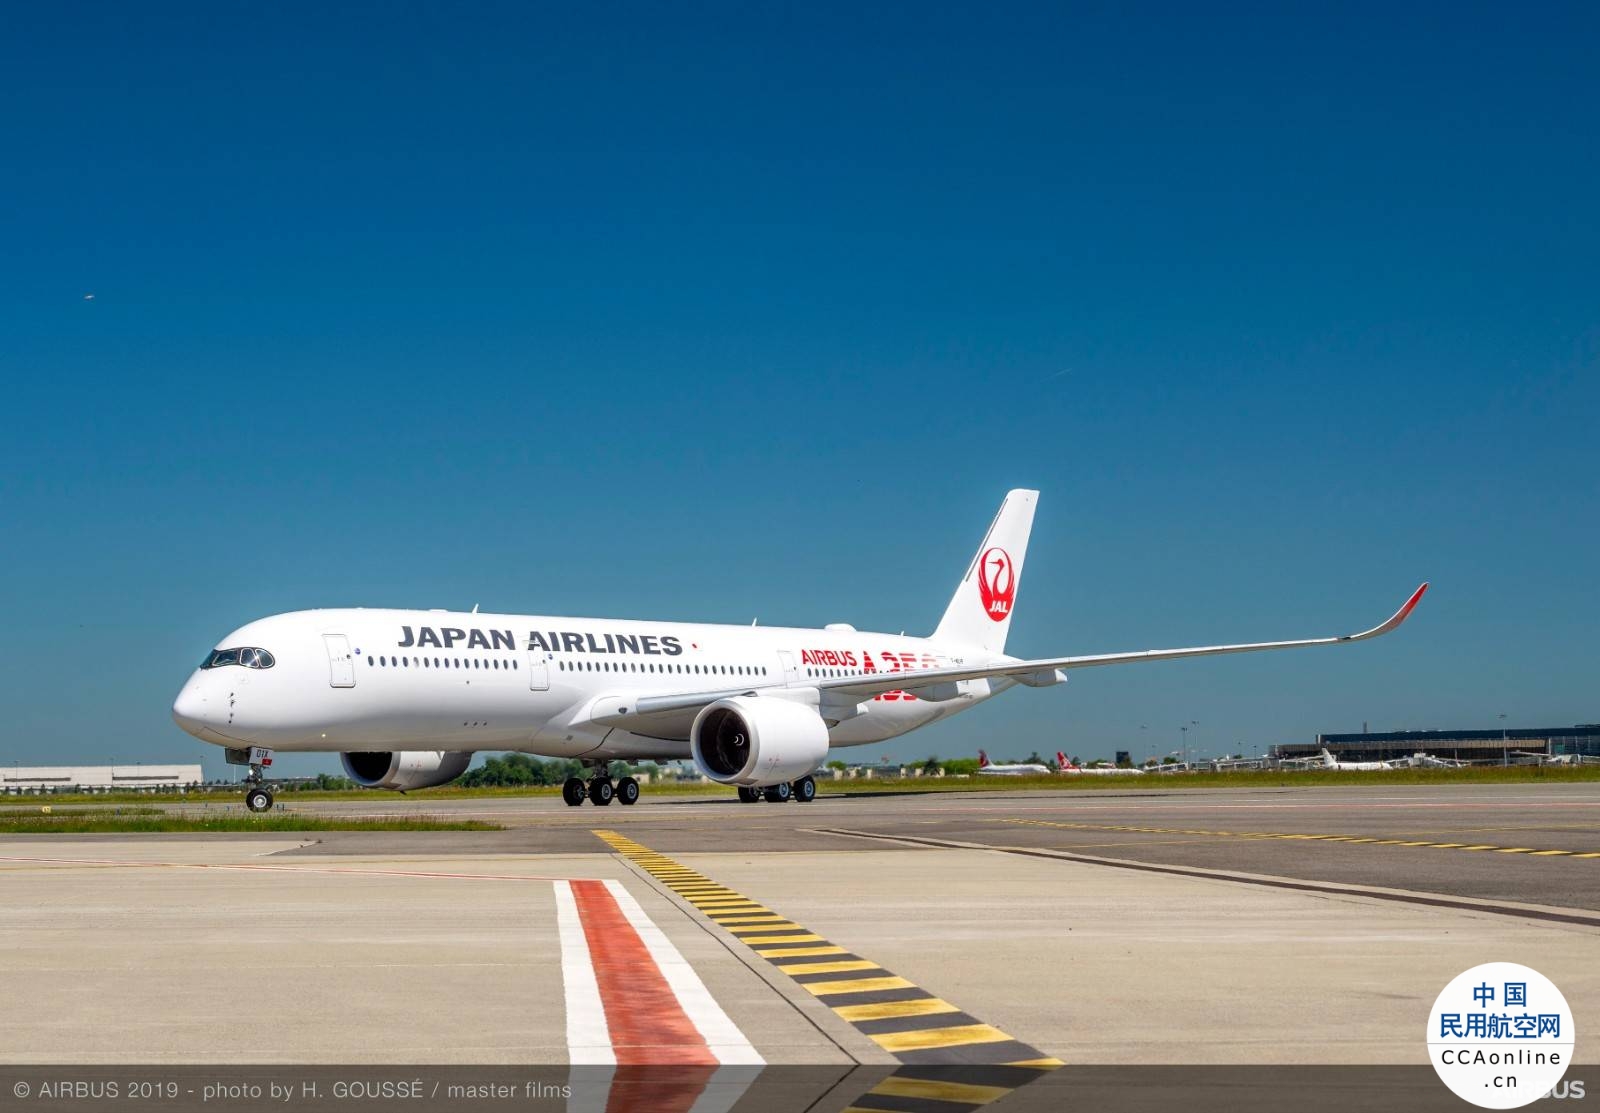 日航宣布将筹资3000亿日元购买空客A350等新机型